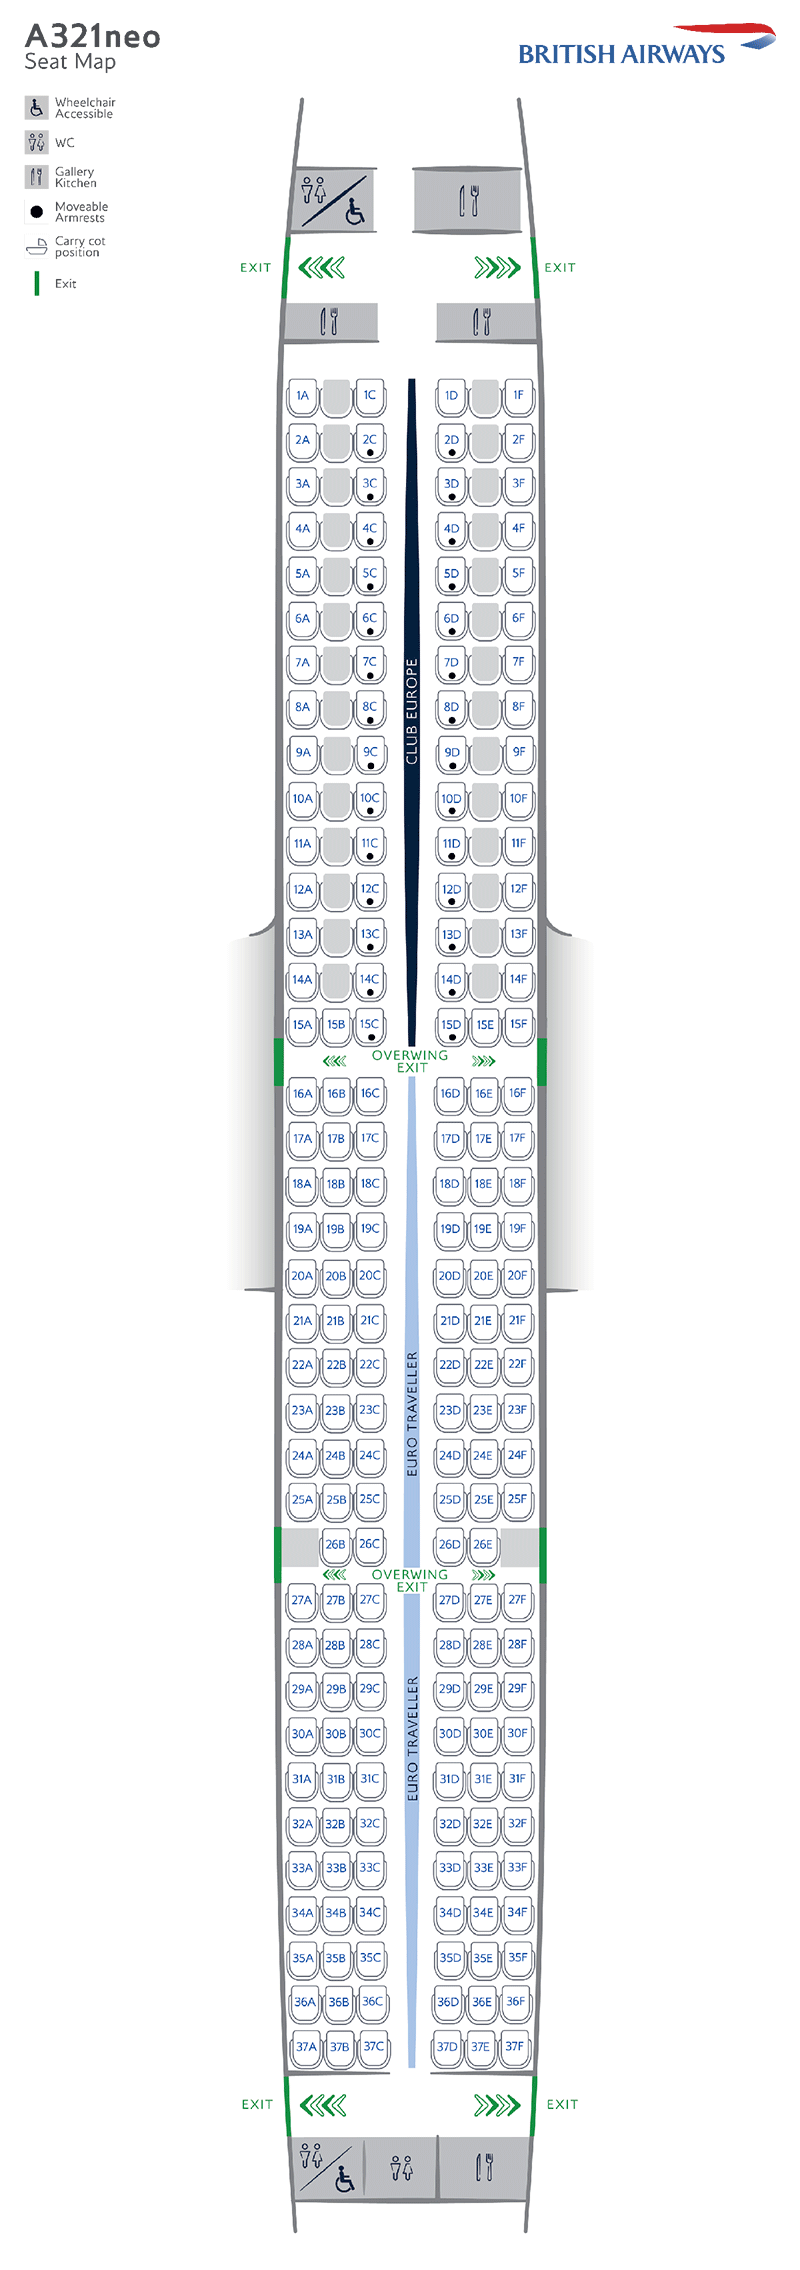 Plan de cabine de l'A321